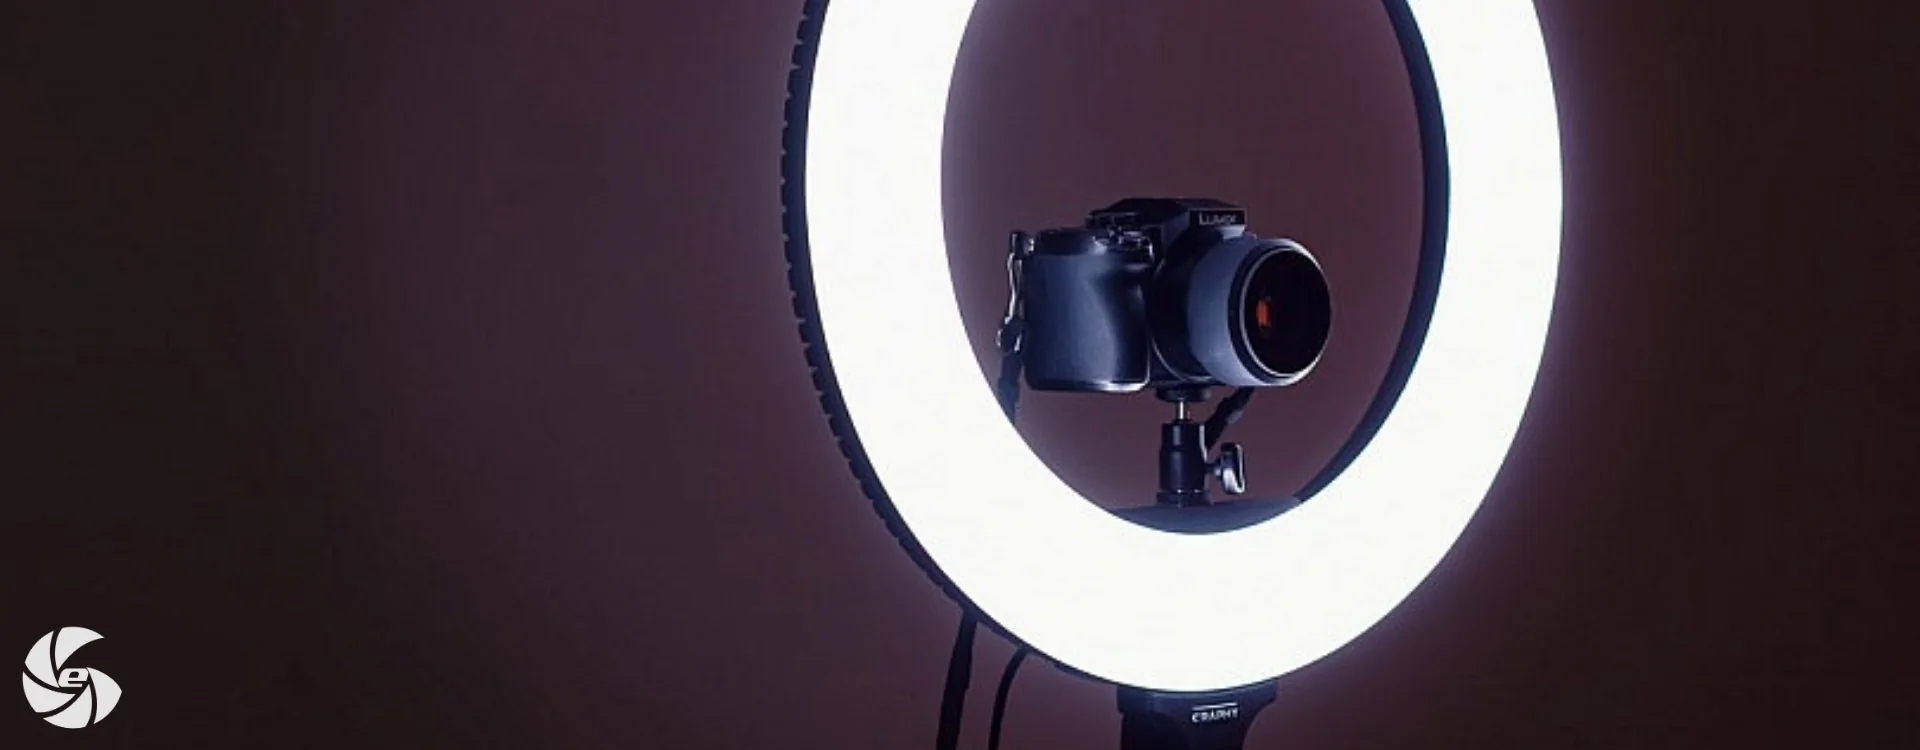 Accesorios de Iluminación para Fotografía Vídeo